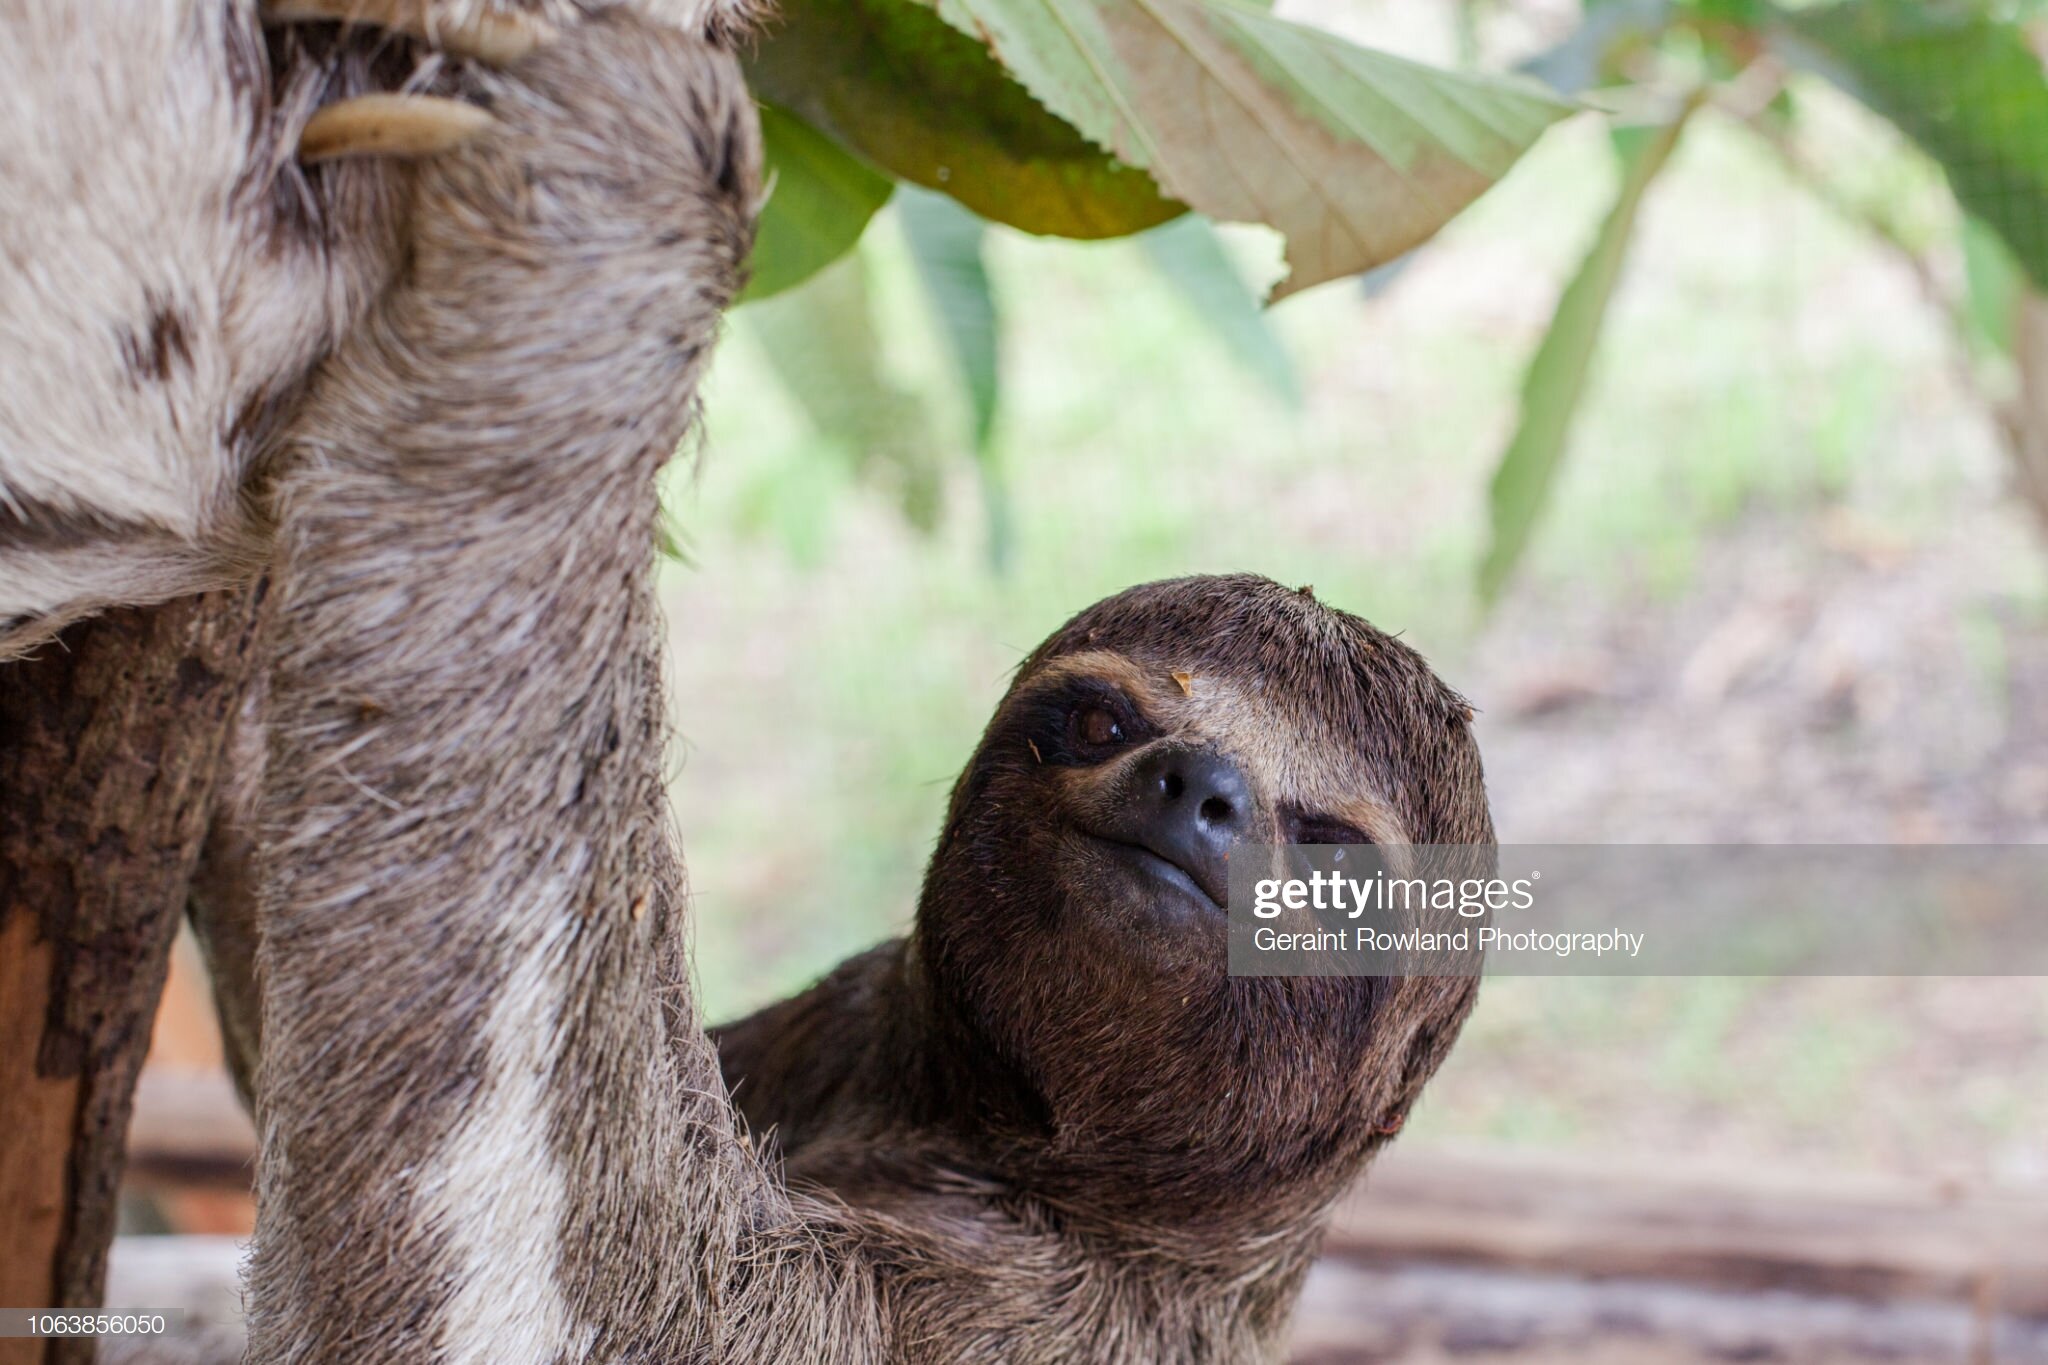 A sloth in Iquitos, Peru.